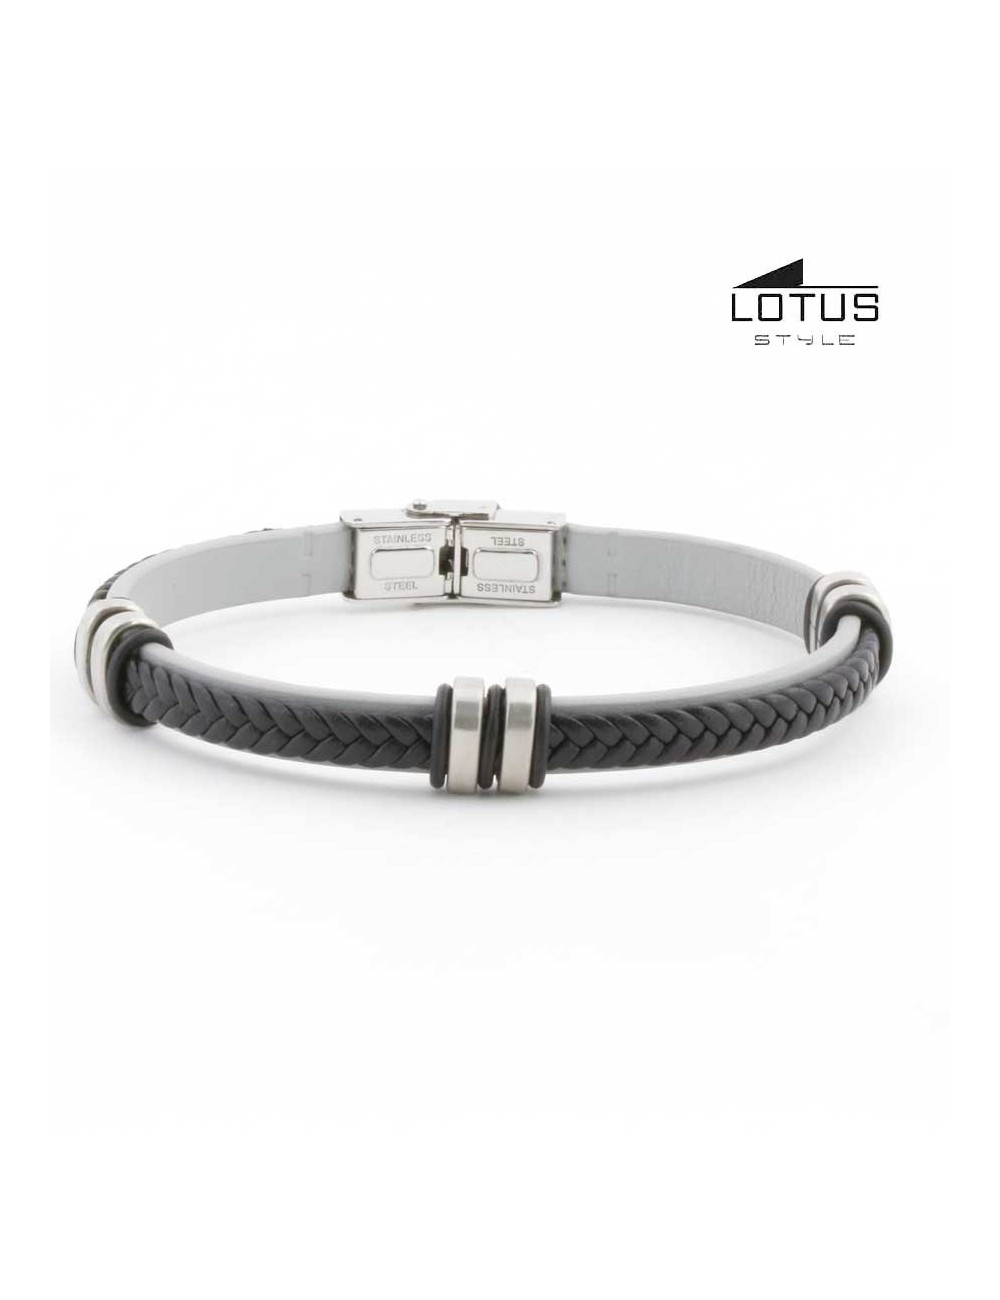 pulsera-lotus-cuero-trenzado-negro-sobre-plano-gris-ls1829-24